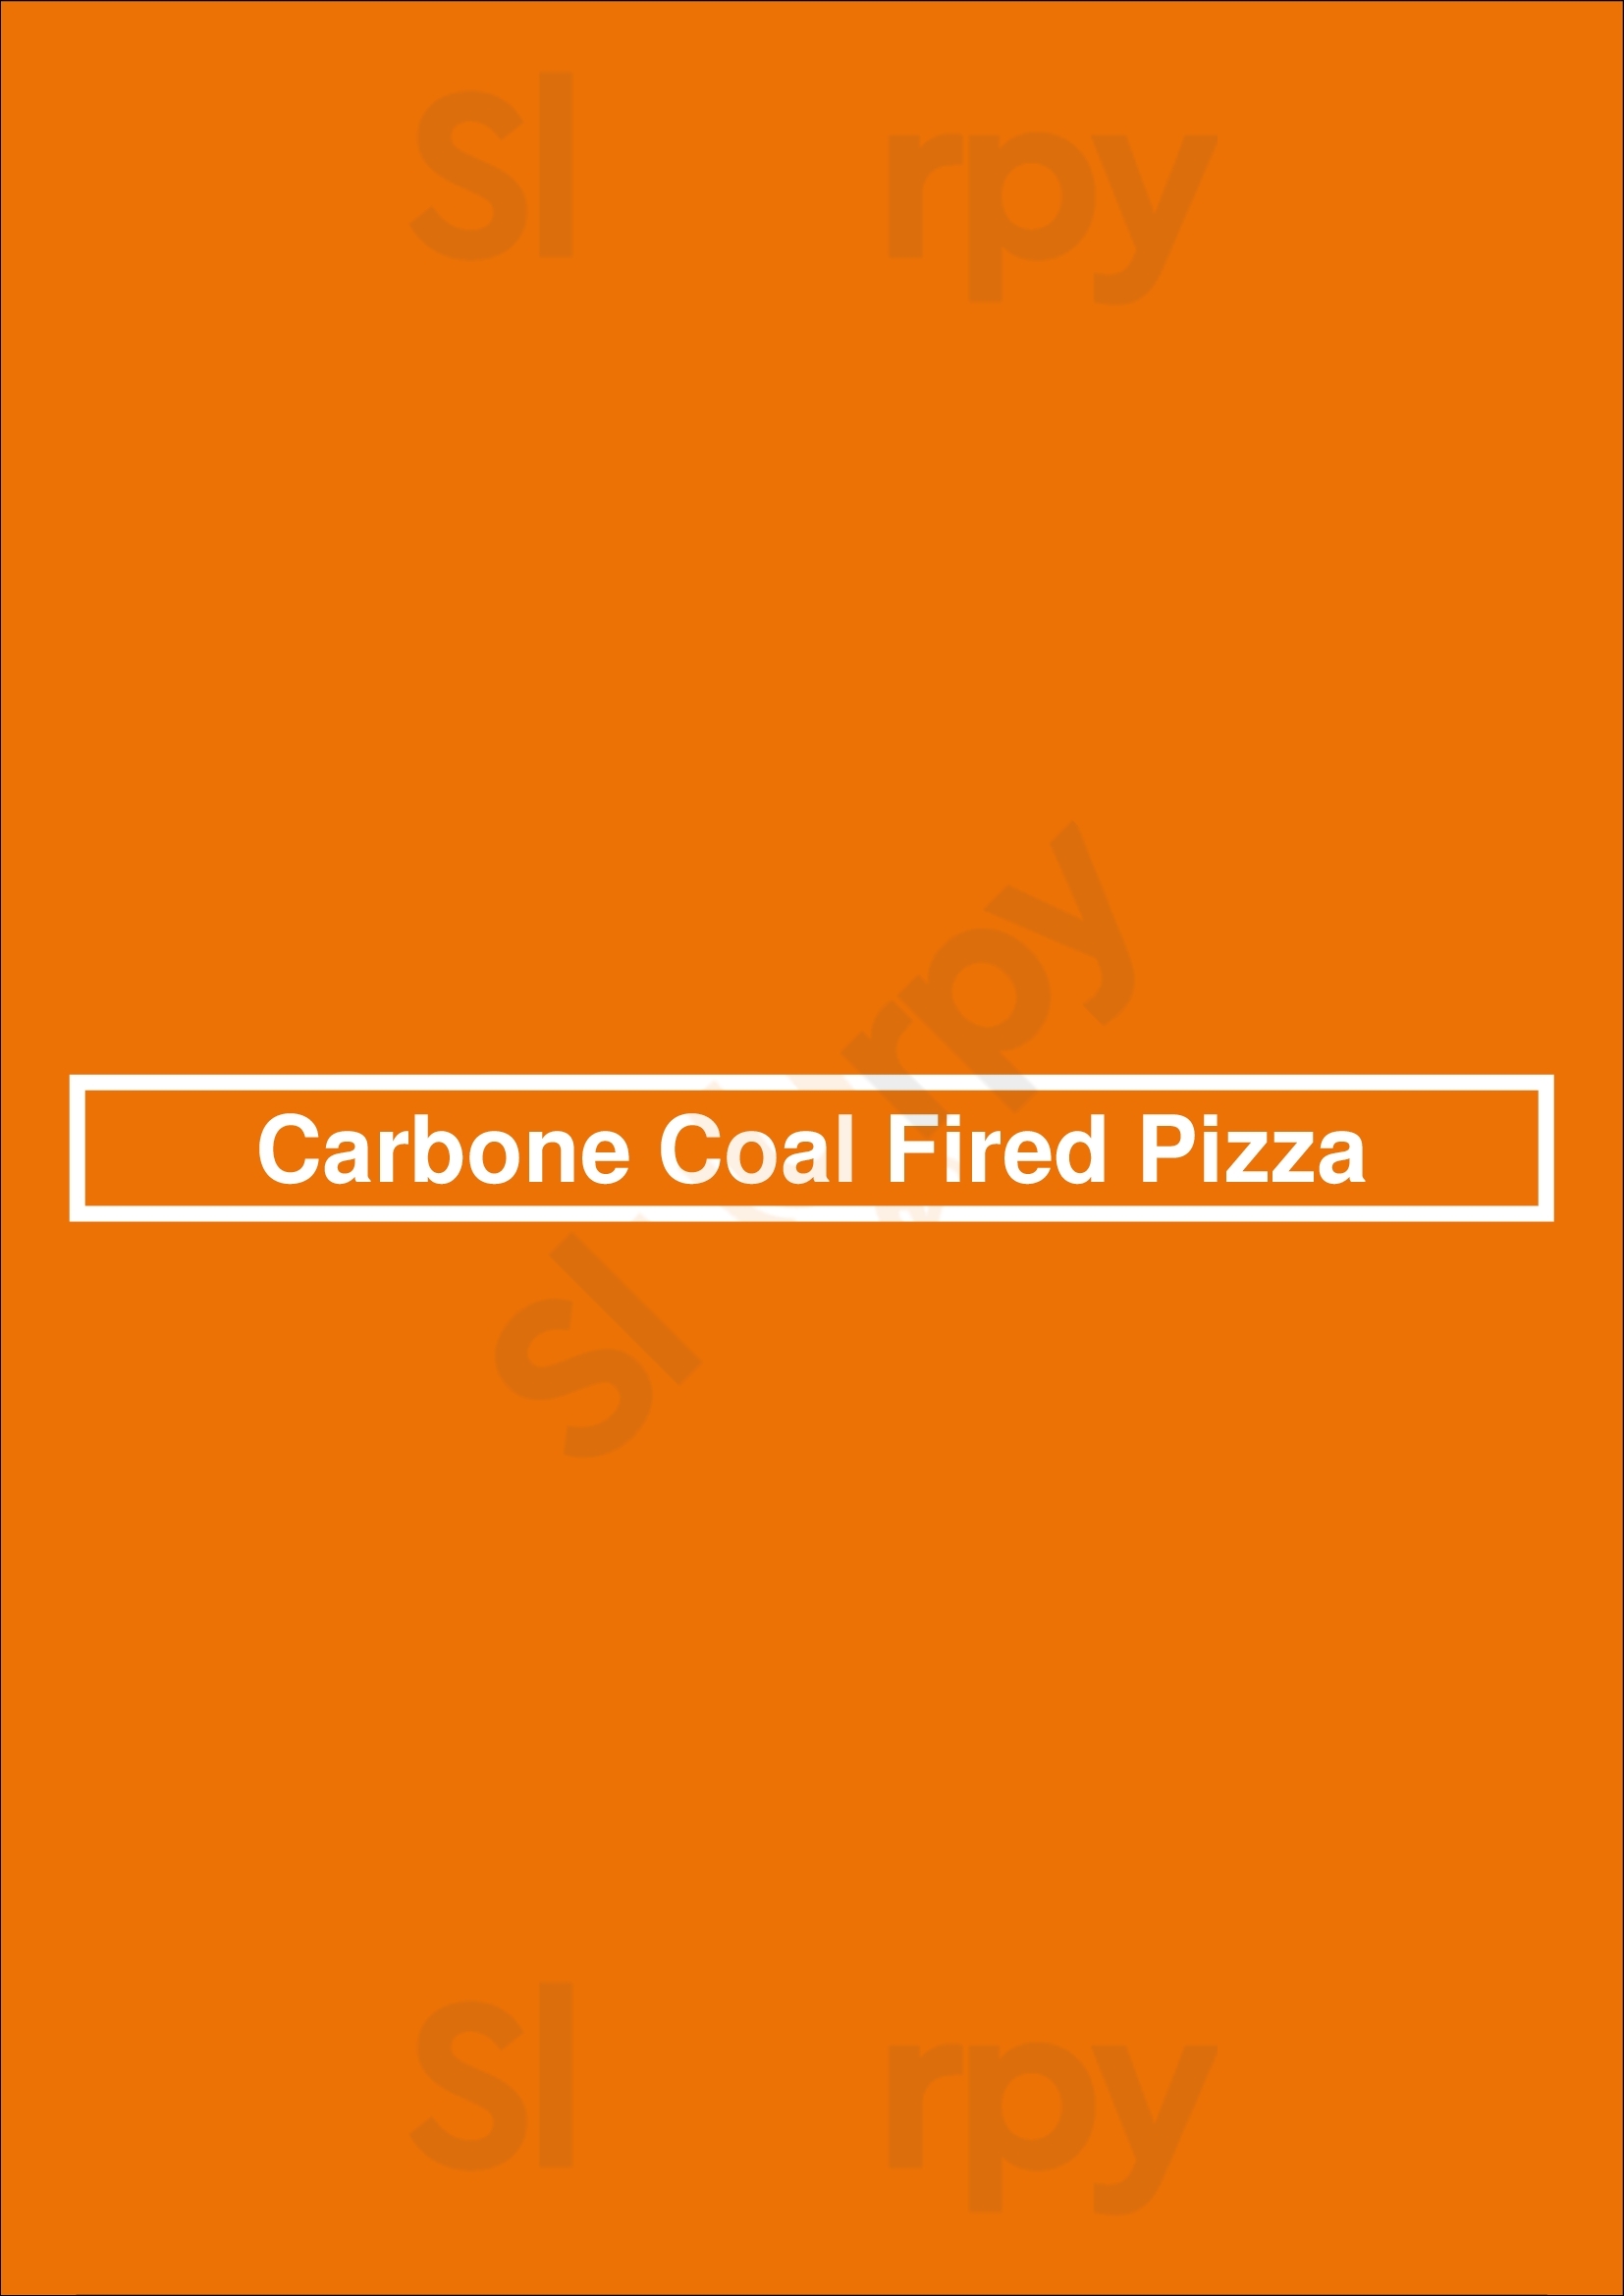 Carbone Coal Fired Pizza Winnipeg Menu - 1